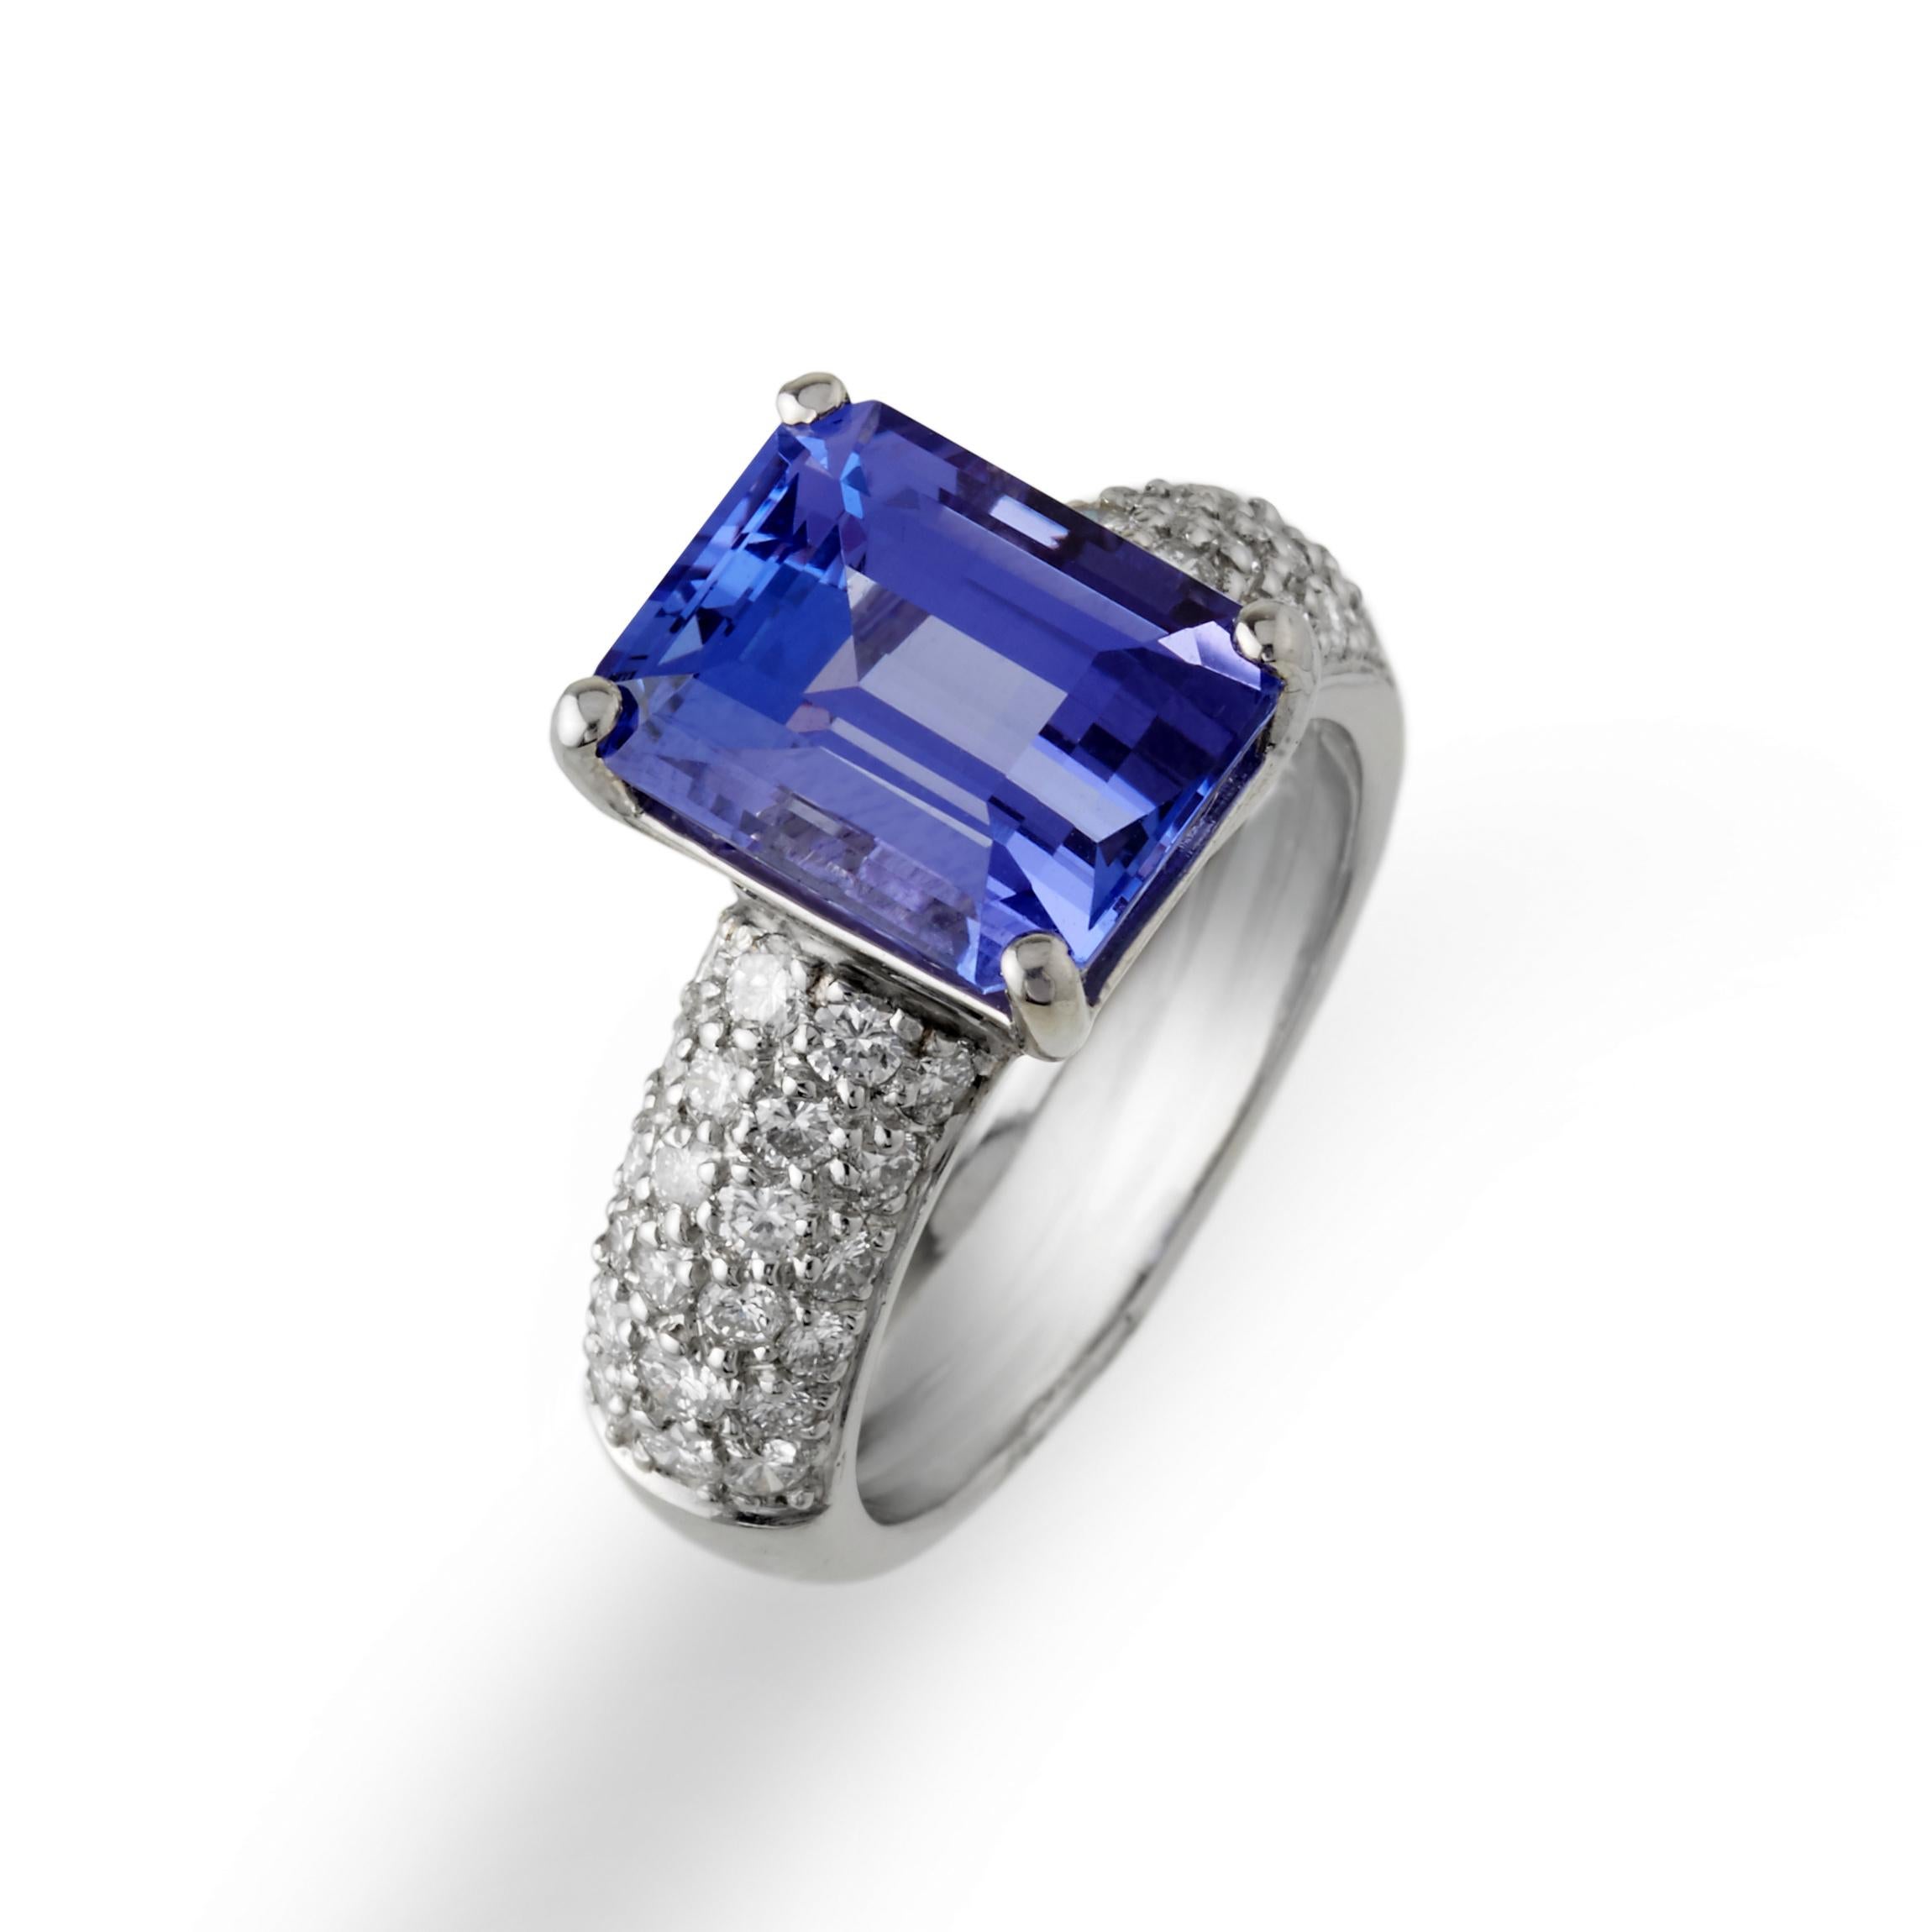 Dieser erhabene Tansanit von 5,80 ct. ist über einem feinen, mit weißen Diamanten besetzten Platinring gefasst. Der Ring ist so schlicht, dass man ihn täglich tragen kann, aber der blaue Farbton setzt ein subtiles Zeichen. Dieser schlichte, aber